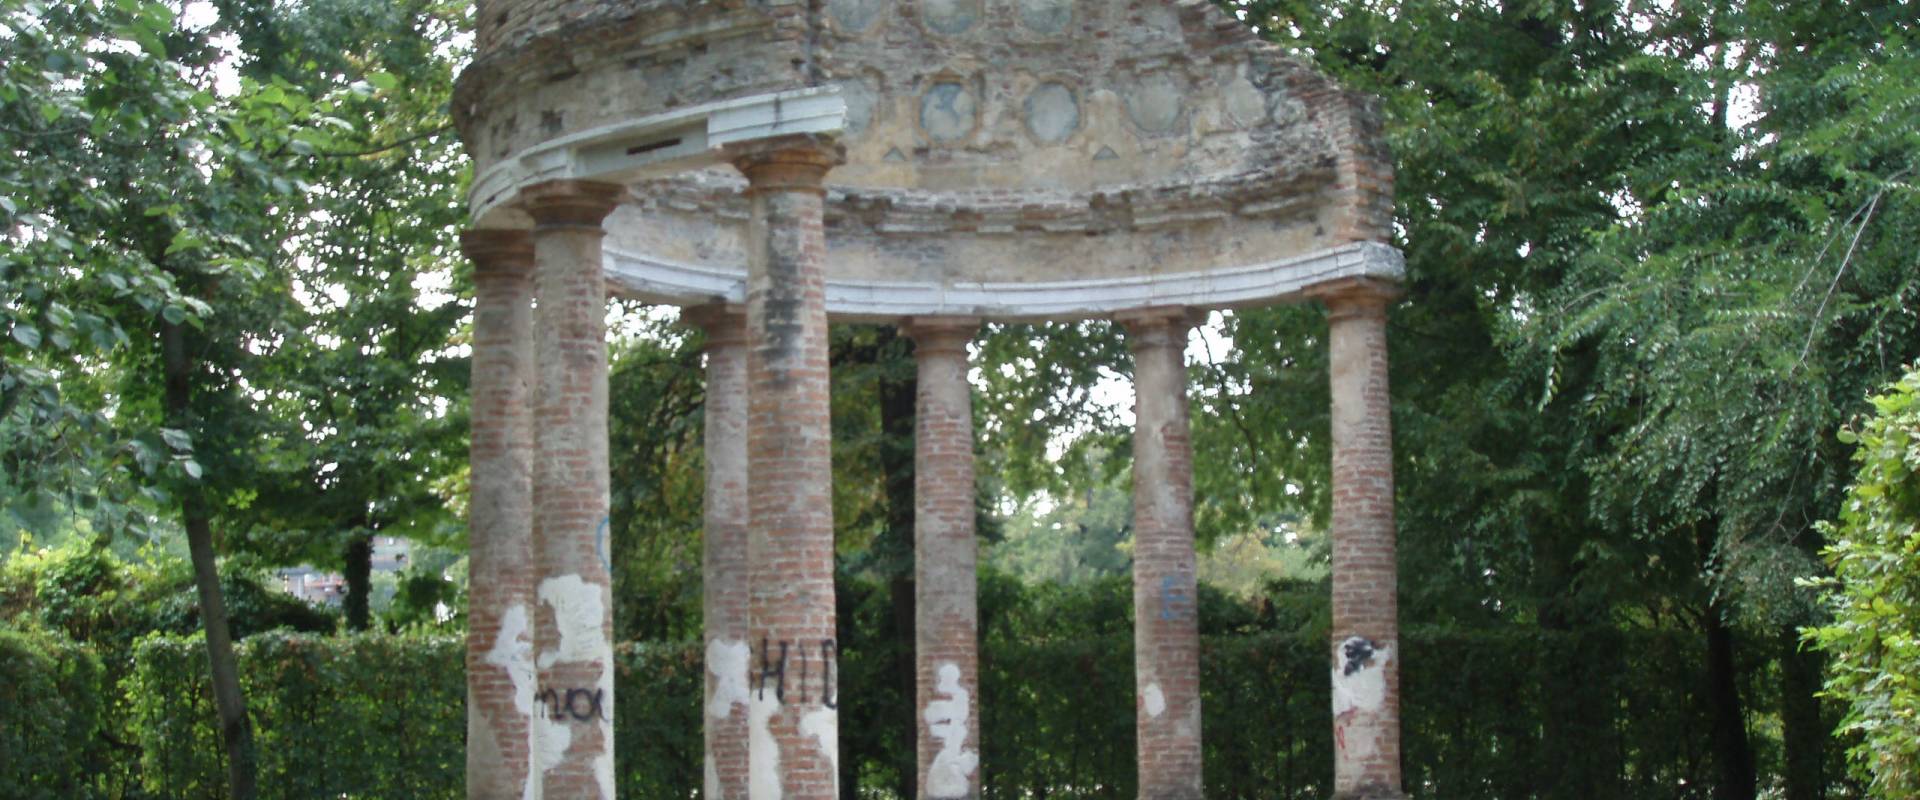 Monumento parco ducale di Parma foto di Marcogiulio